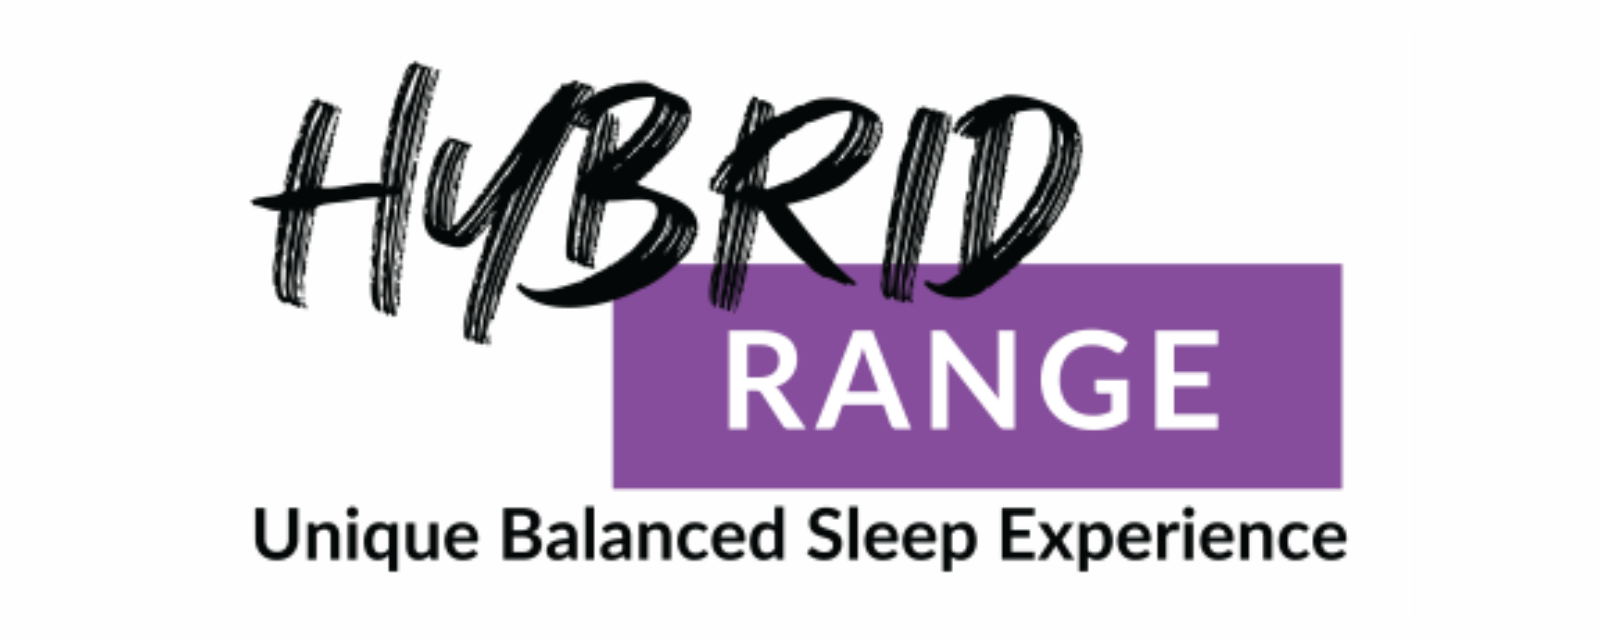 Hybrid Range Logo